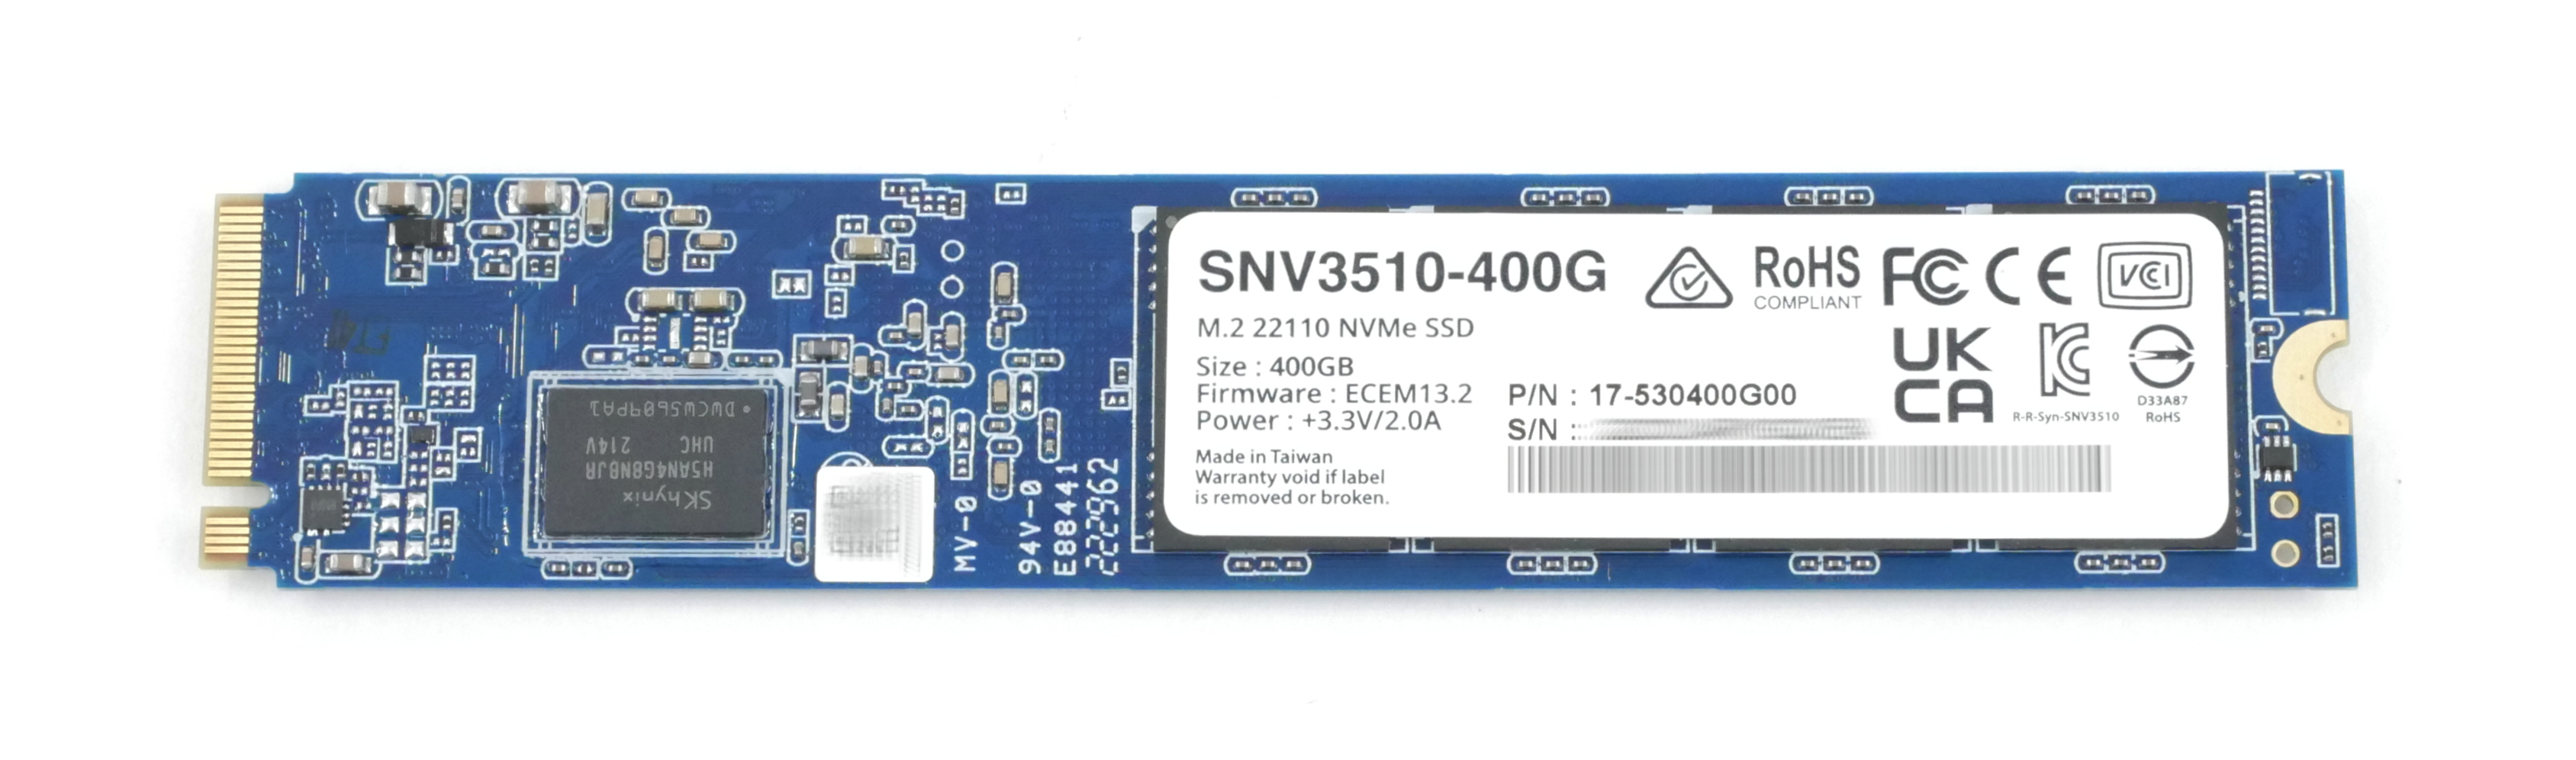 Synology Enterprise SNV3510-400G SSD 400GB NVMe M.2 22110 PCIe 3.0 x4 17-530400G00